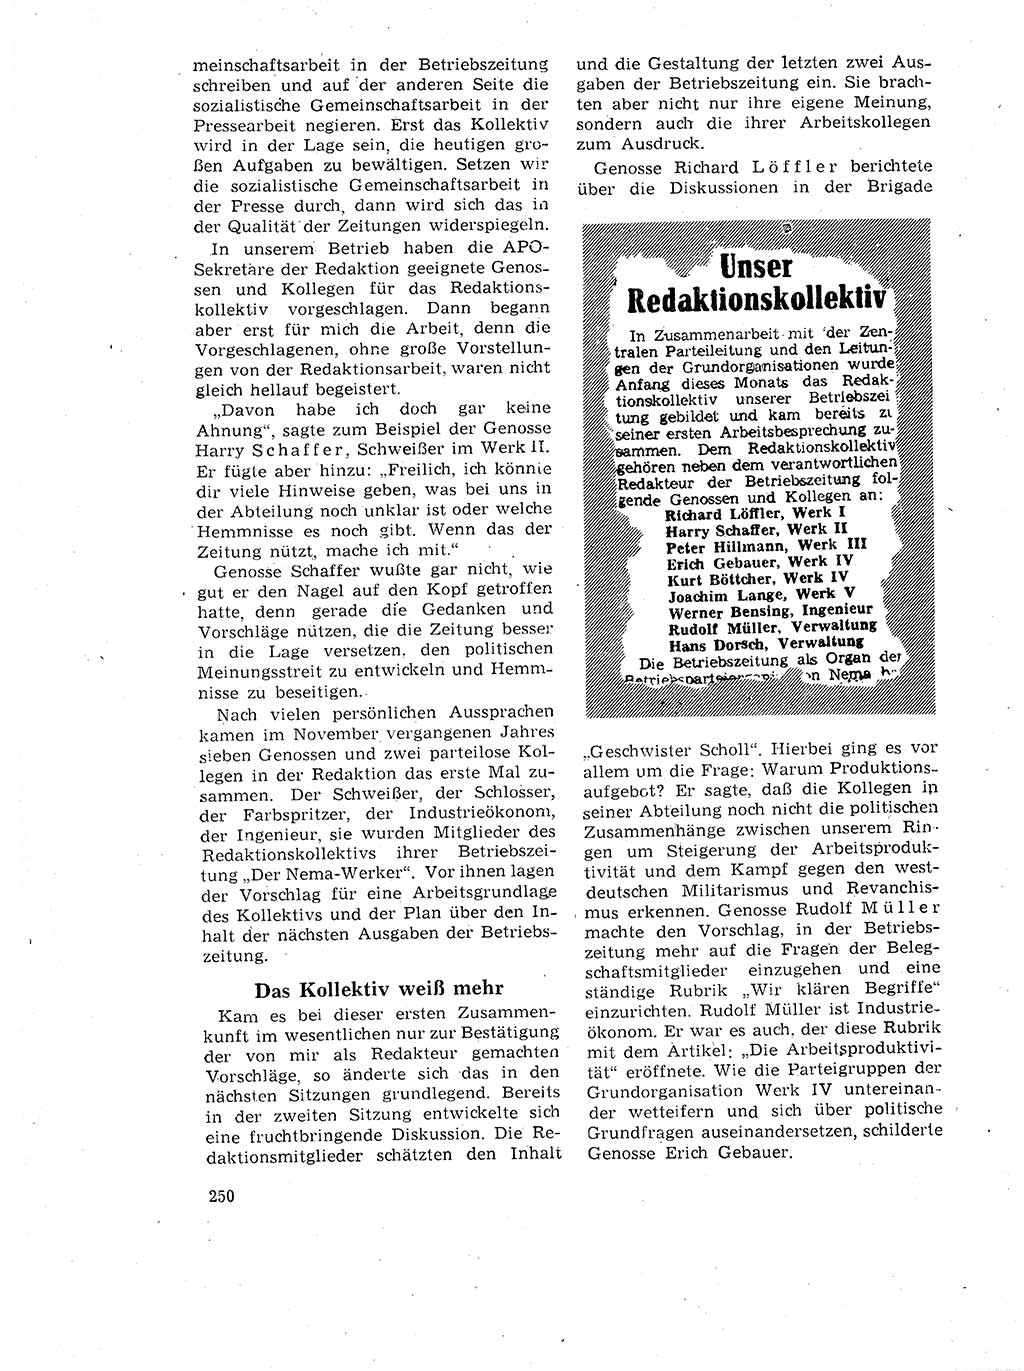 Neuer Weg (NW), Organ des Zentralkomitees (ZK) der SED (Sozialistische Einheitspartei Deutschlands) für Fragen des Parteilebens, 17. Jahrgang [Deutsche Demokratische Republik (DDR)] 1962, Seite 250 (NW ZK SED DDR 1962, S. 250)